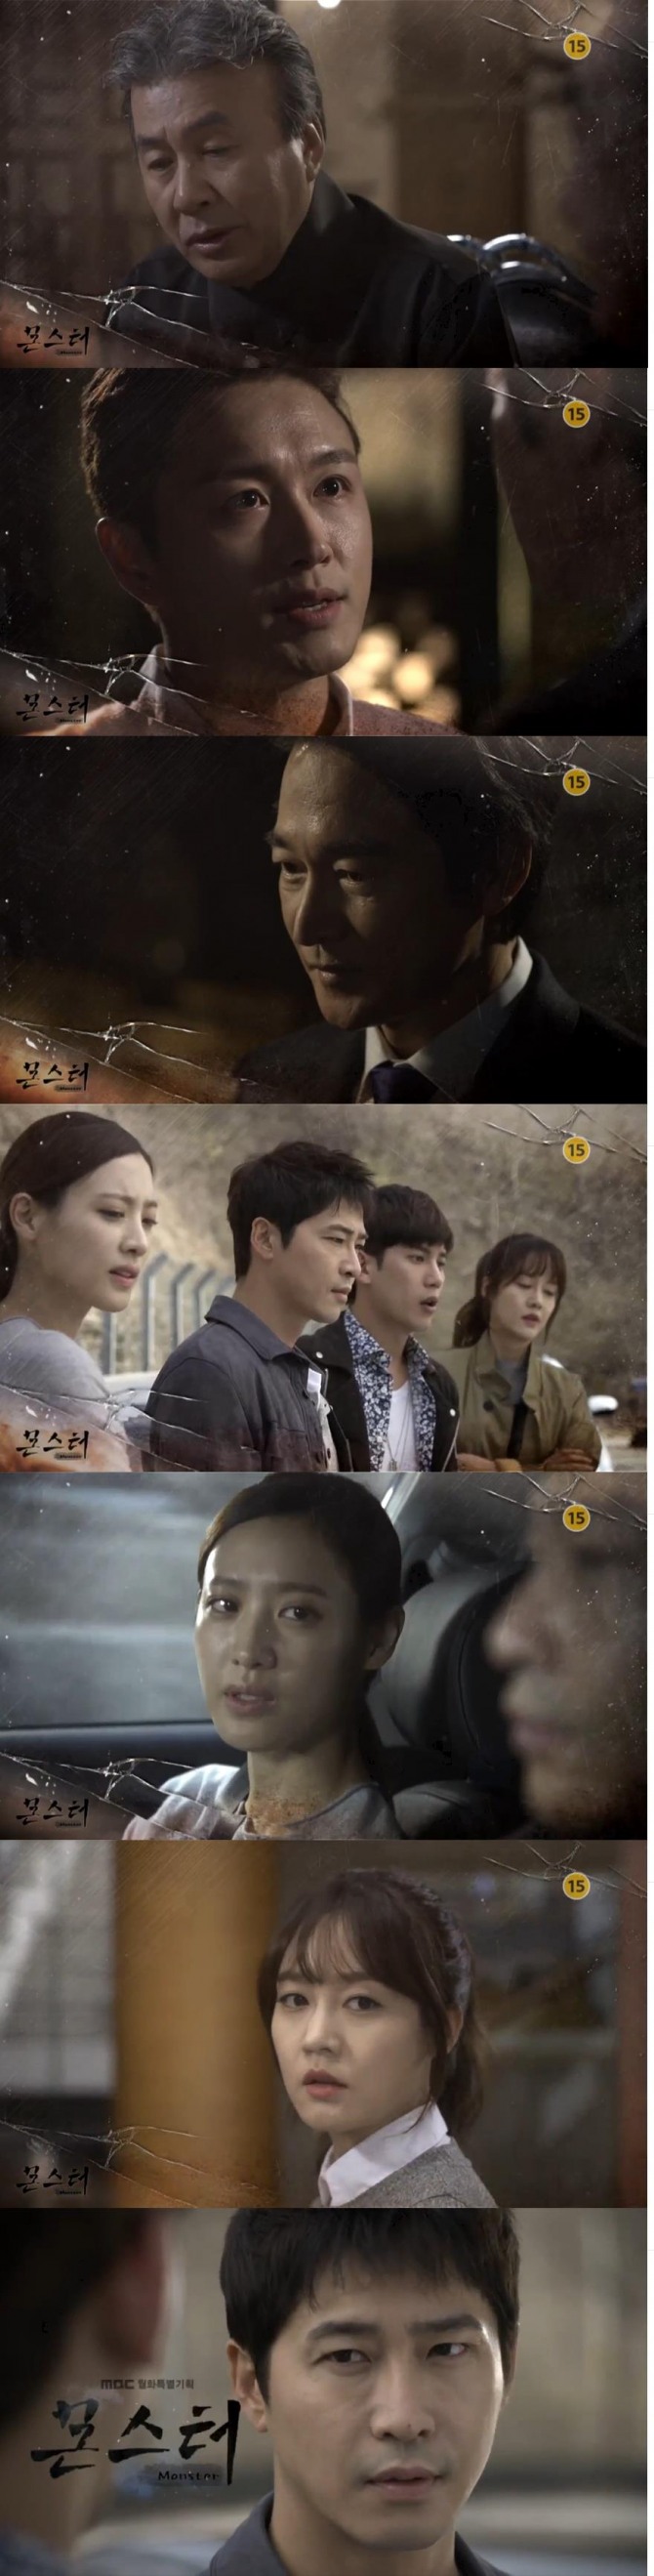 5일밤 방송되는 MBC 월화극 '몬스터'에서 복수를 위해 도도그룹에 입사한 강기탄(강지환)은 변일재(정보석)에게 스파이로 몰린다./사진=MBC 방송 캡처